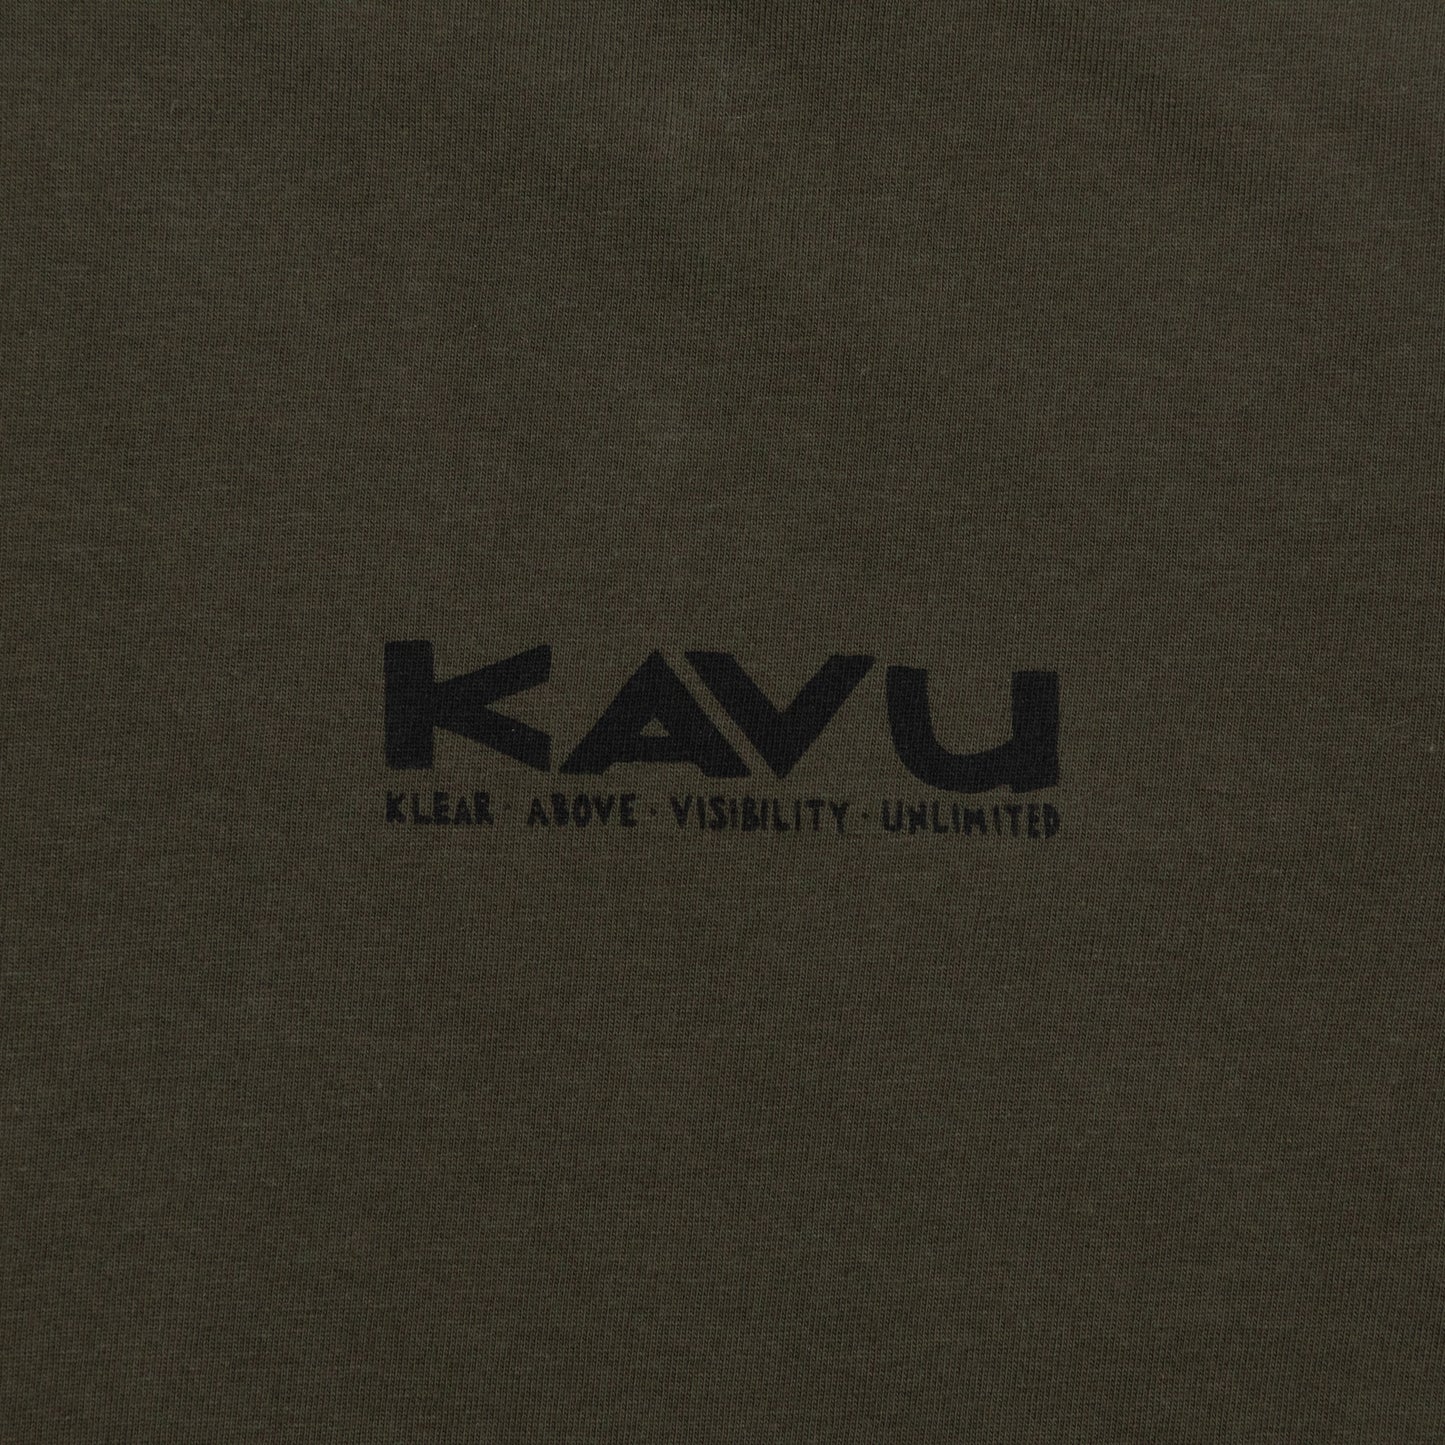 KAVU Klear Above Etch Art T-Shirt in GREEN